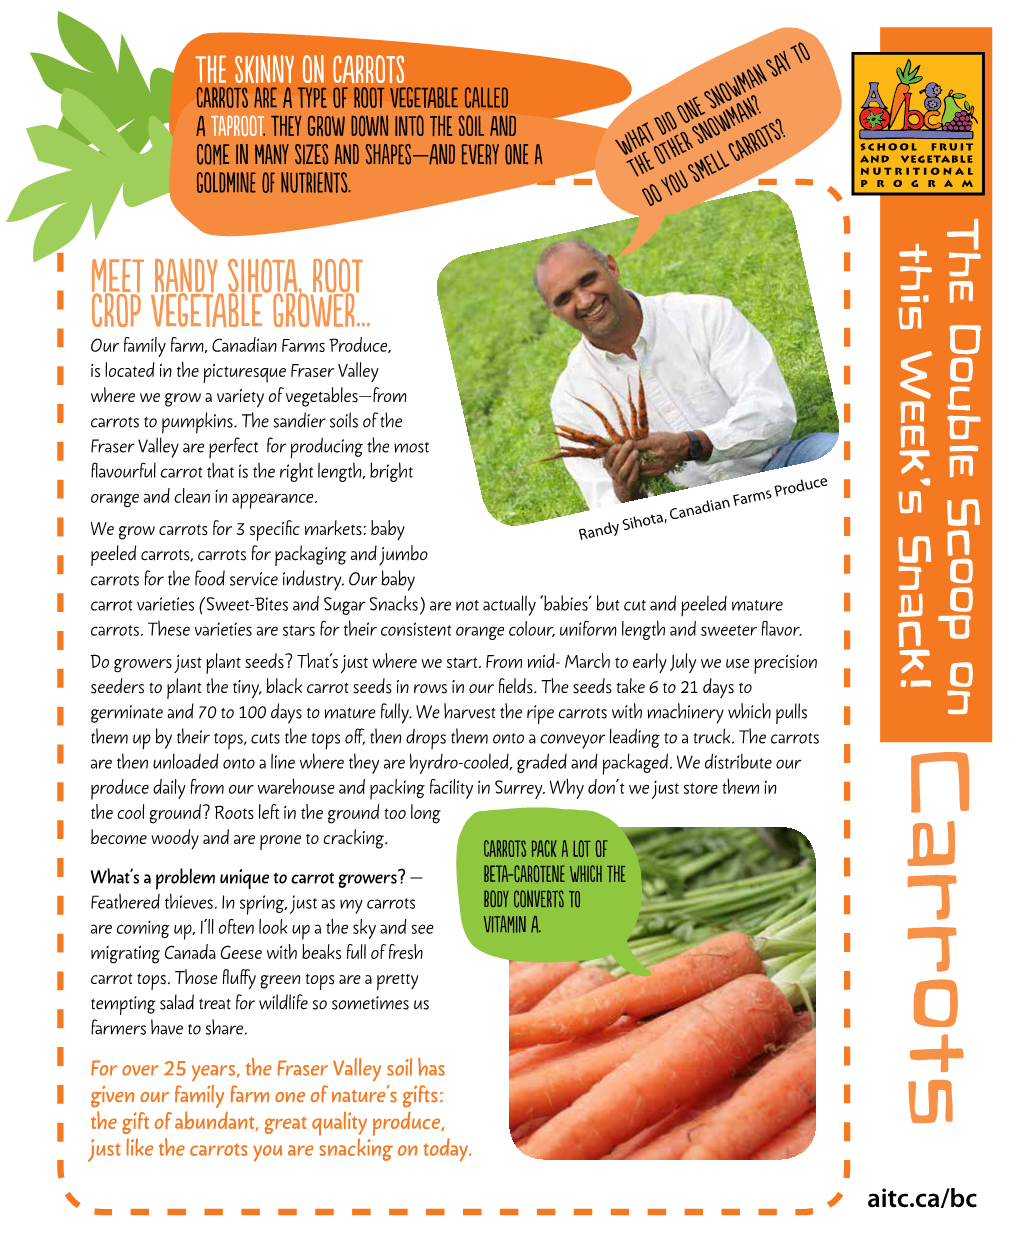 Meet Randy Sihota, Root Crop Vegetable Grower